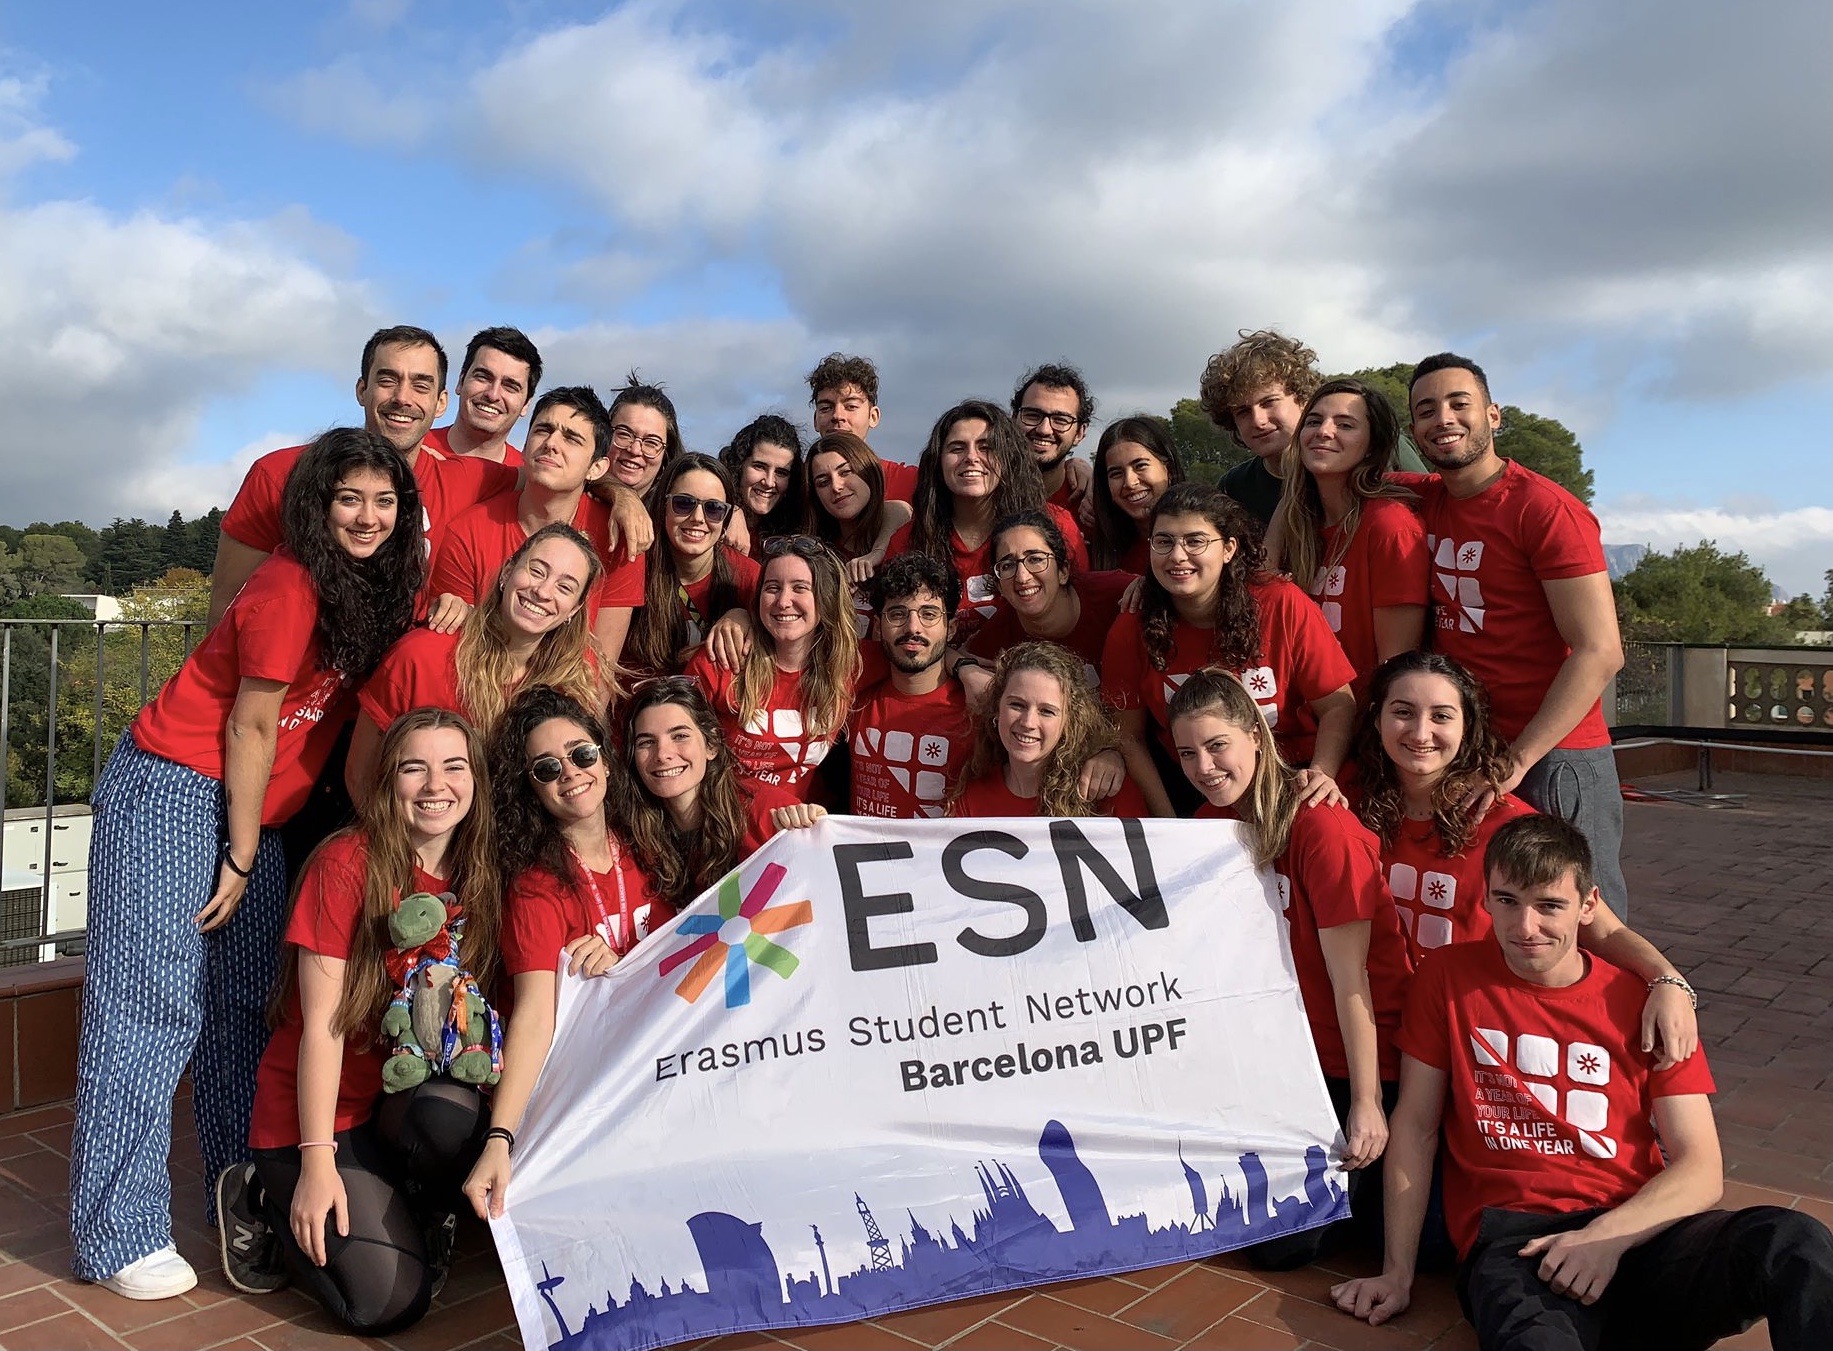 Volunteers of ESN Barcelona UPF